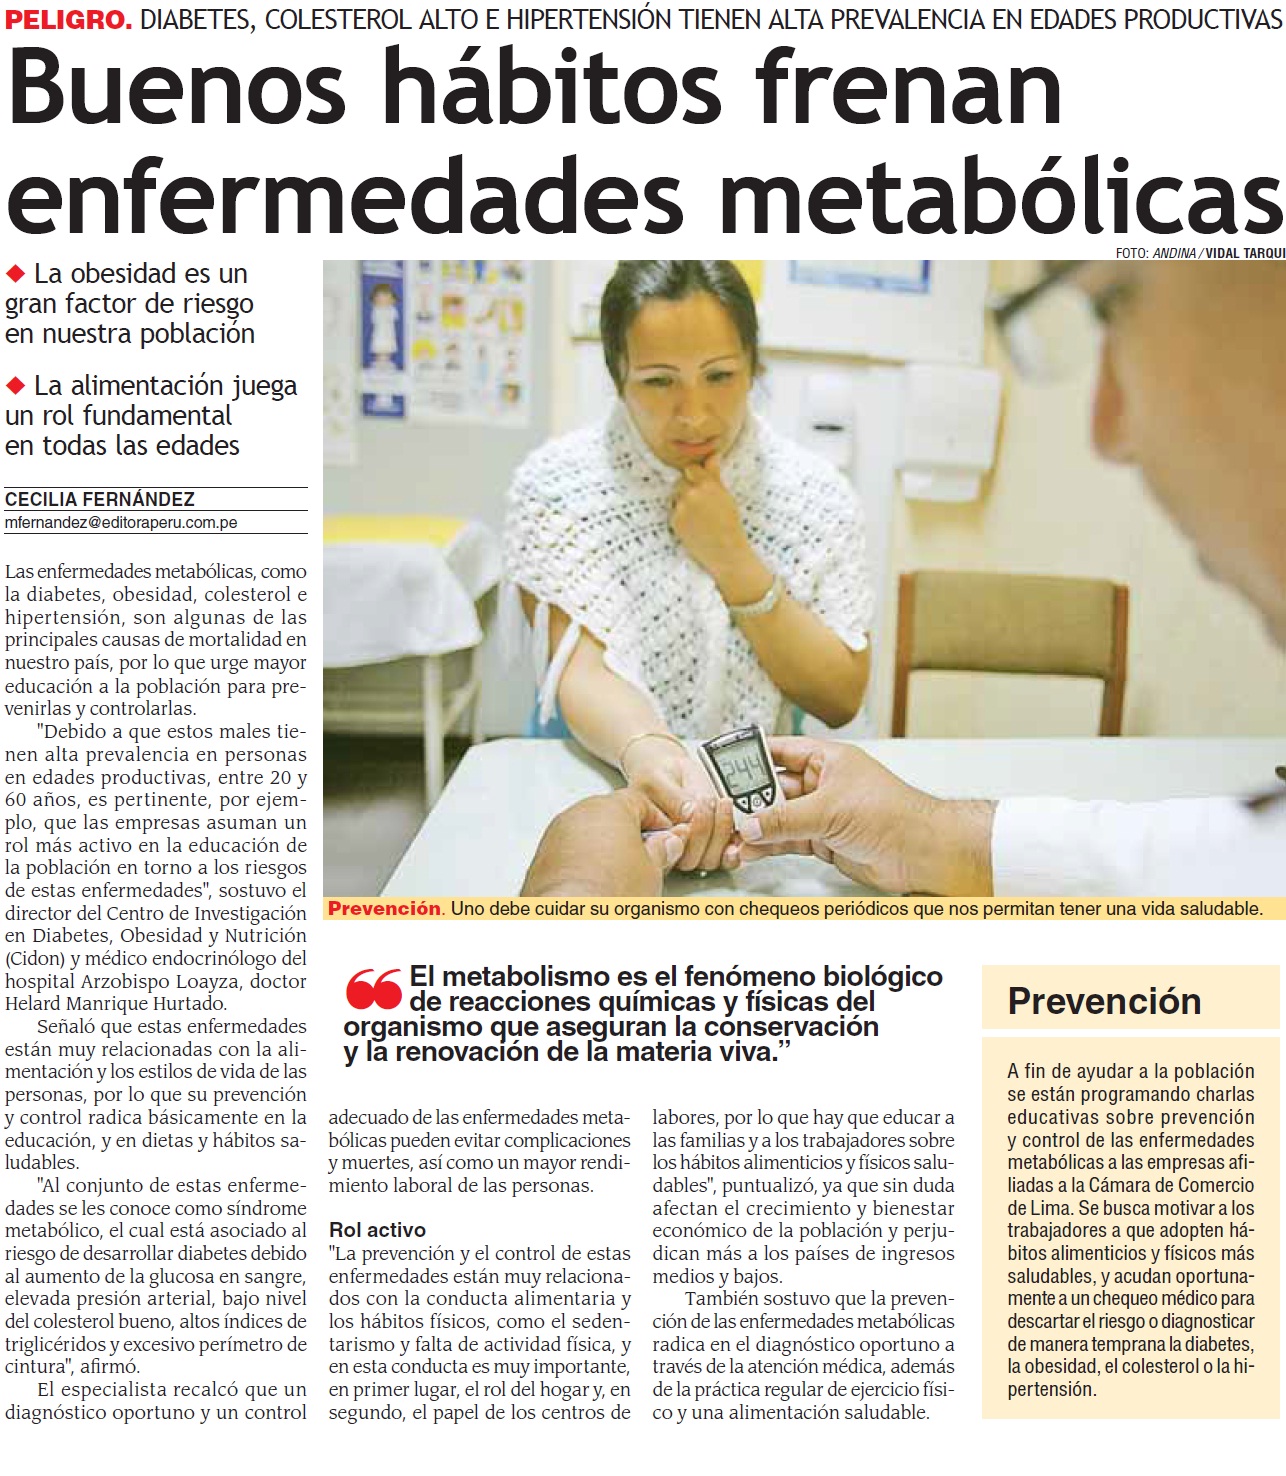 INFORMATISALUD Noticias Boletines de Salud Perú BOLETINES DE SALUD